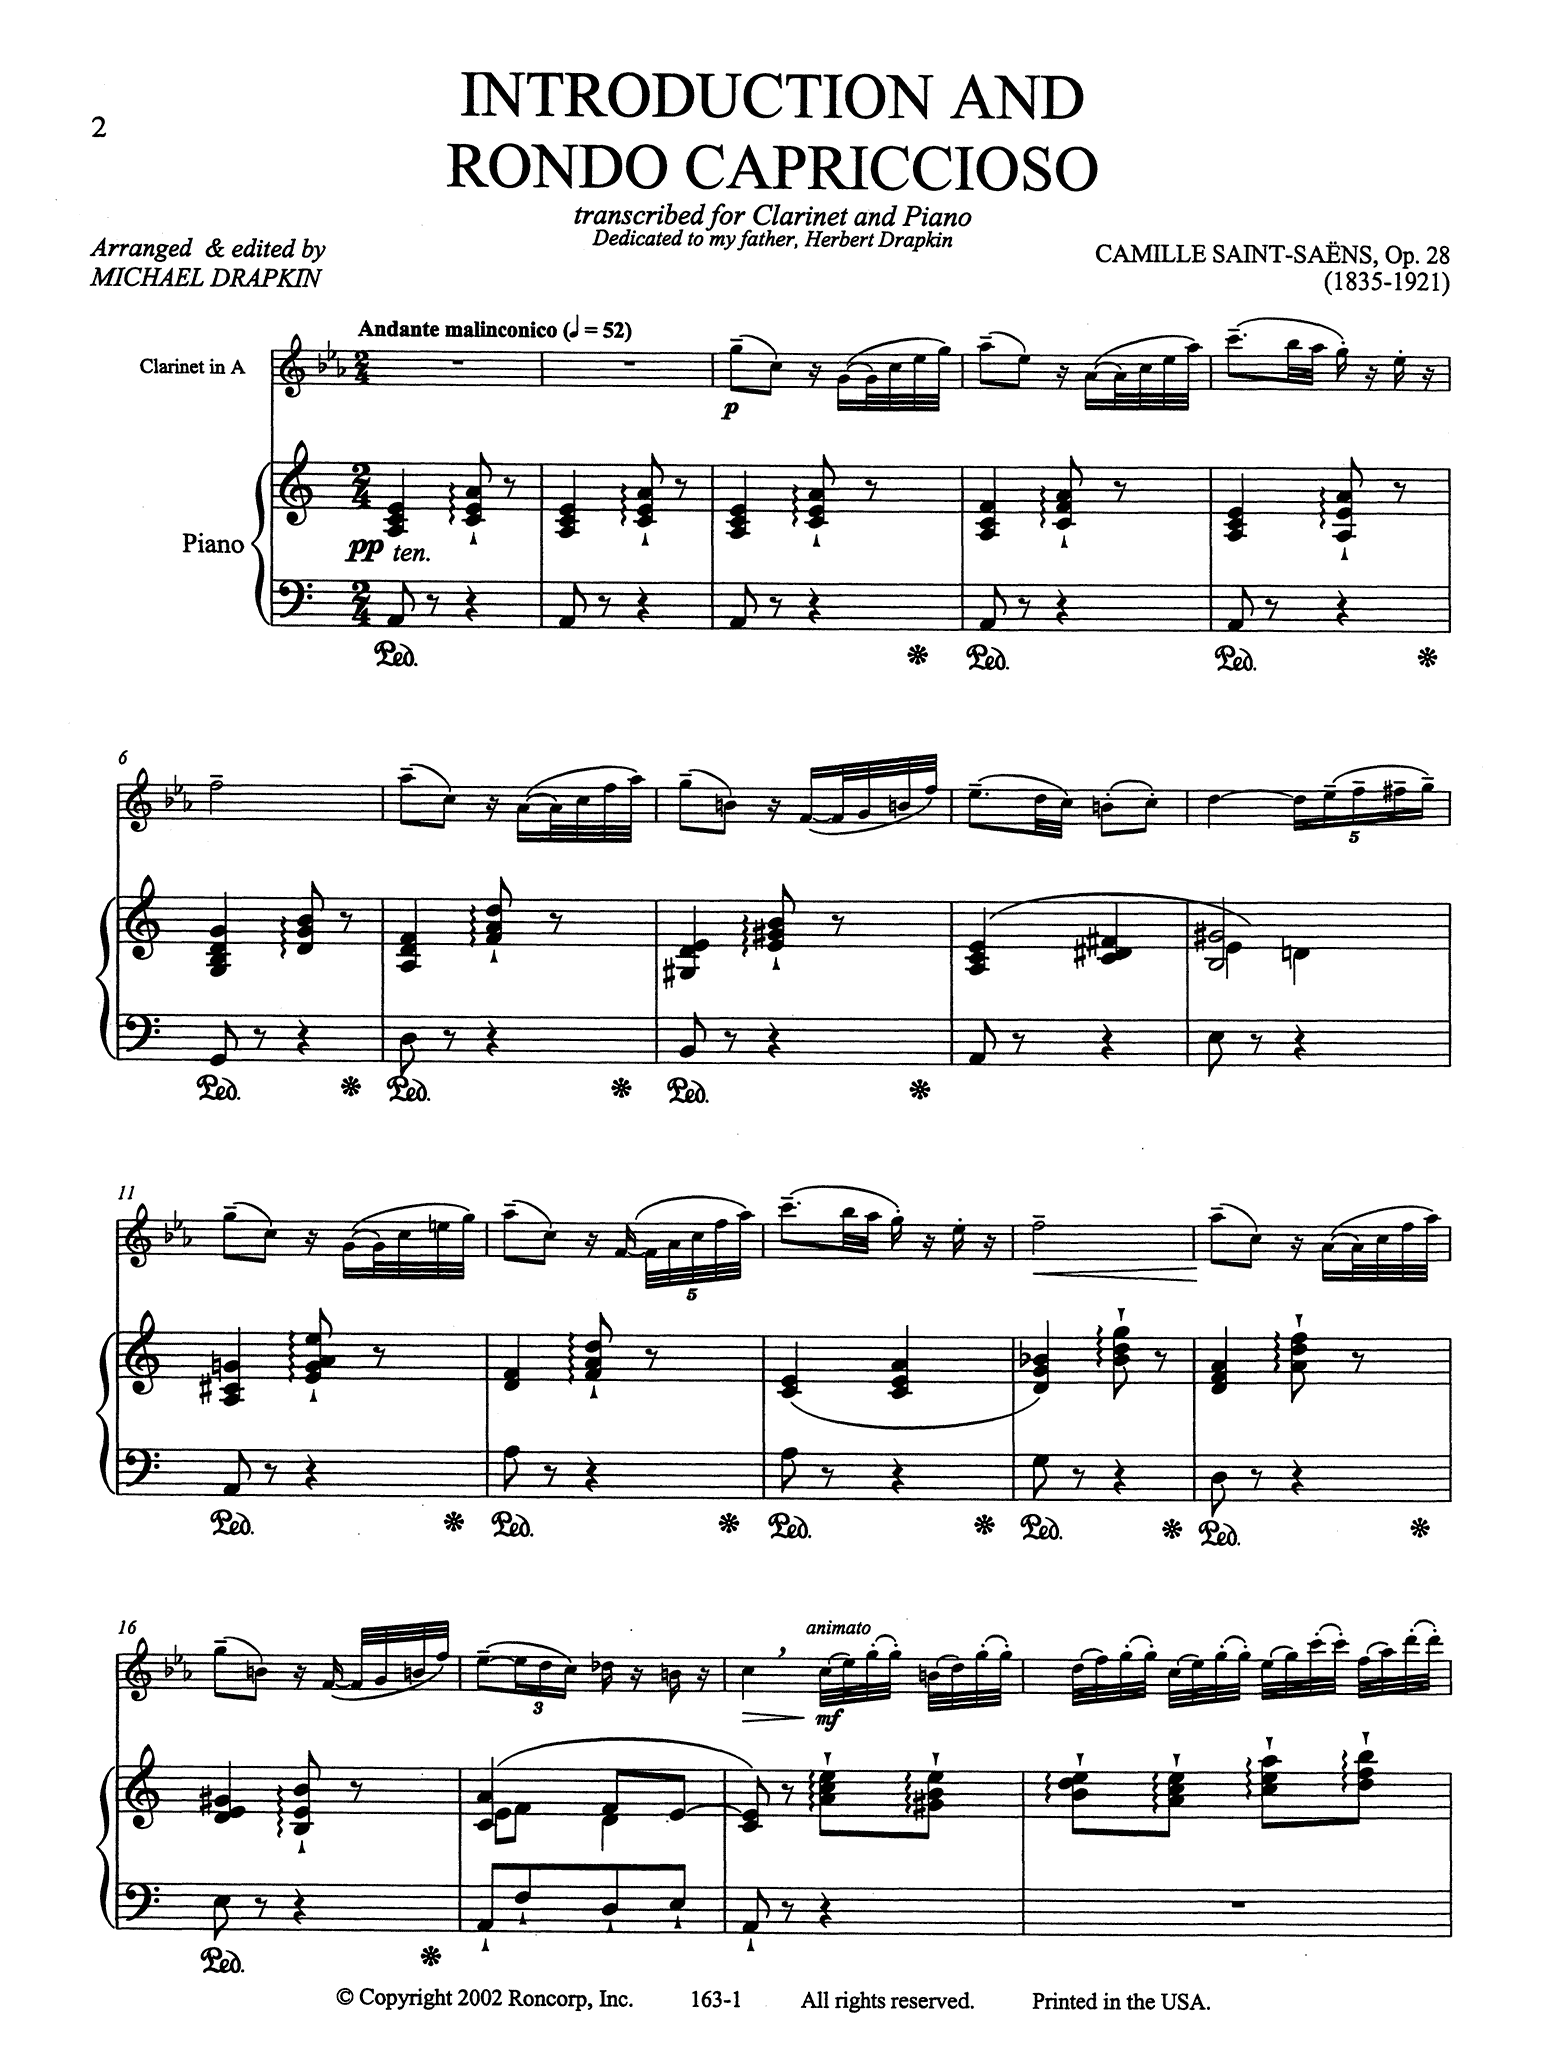 Saint-Saëns Introduction et rondo capriccioso, Op. 28 clarinet arrangement score